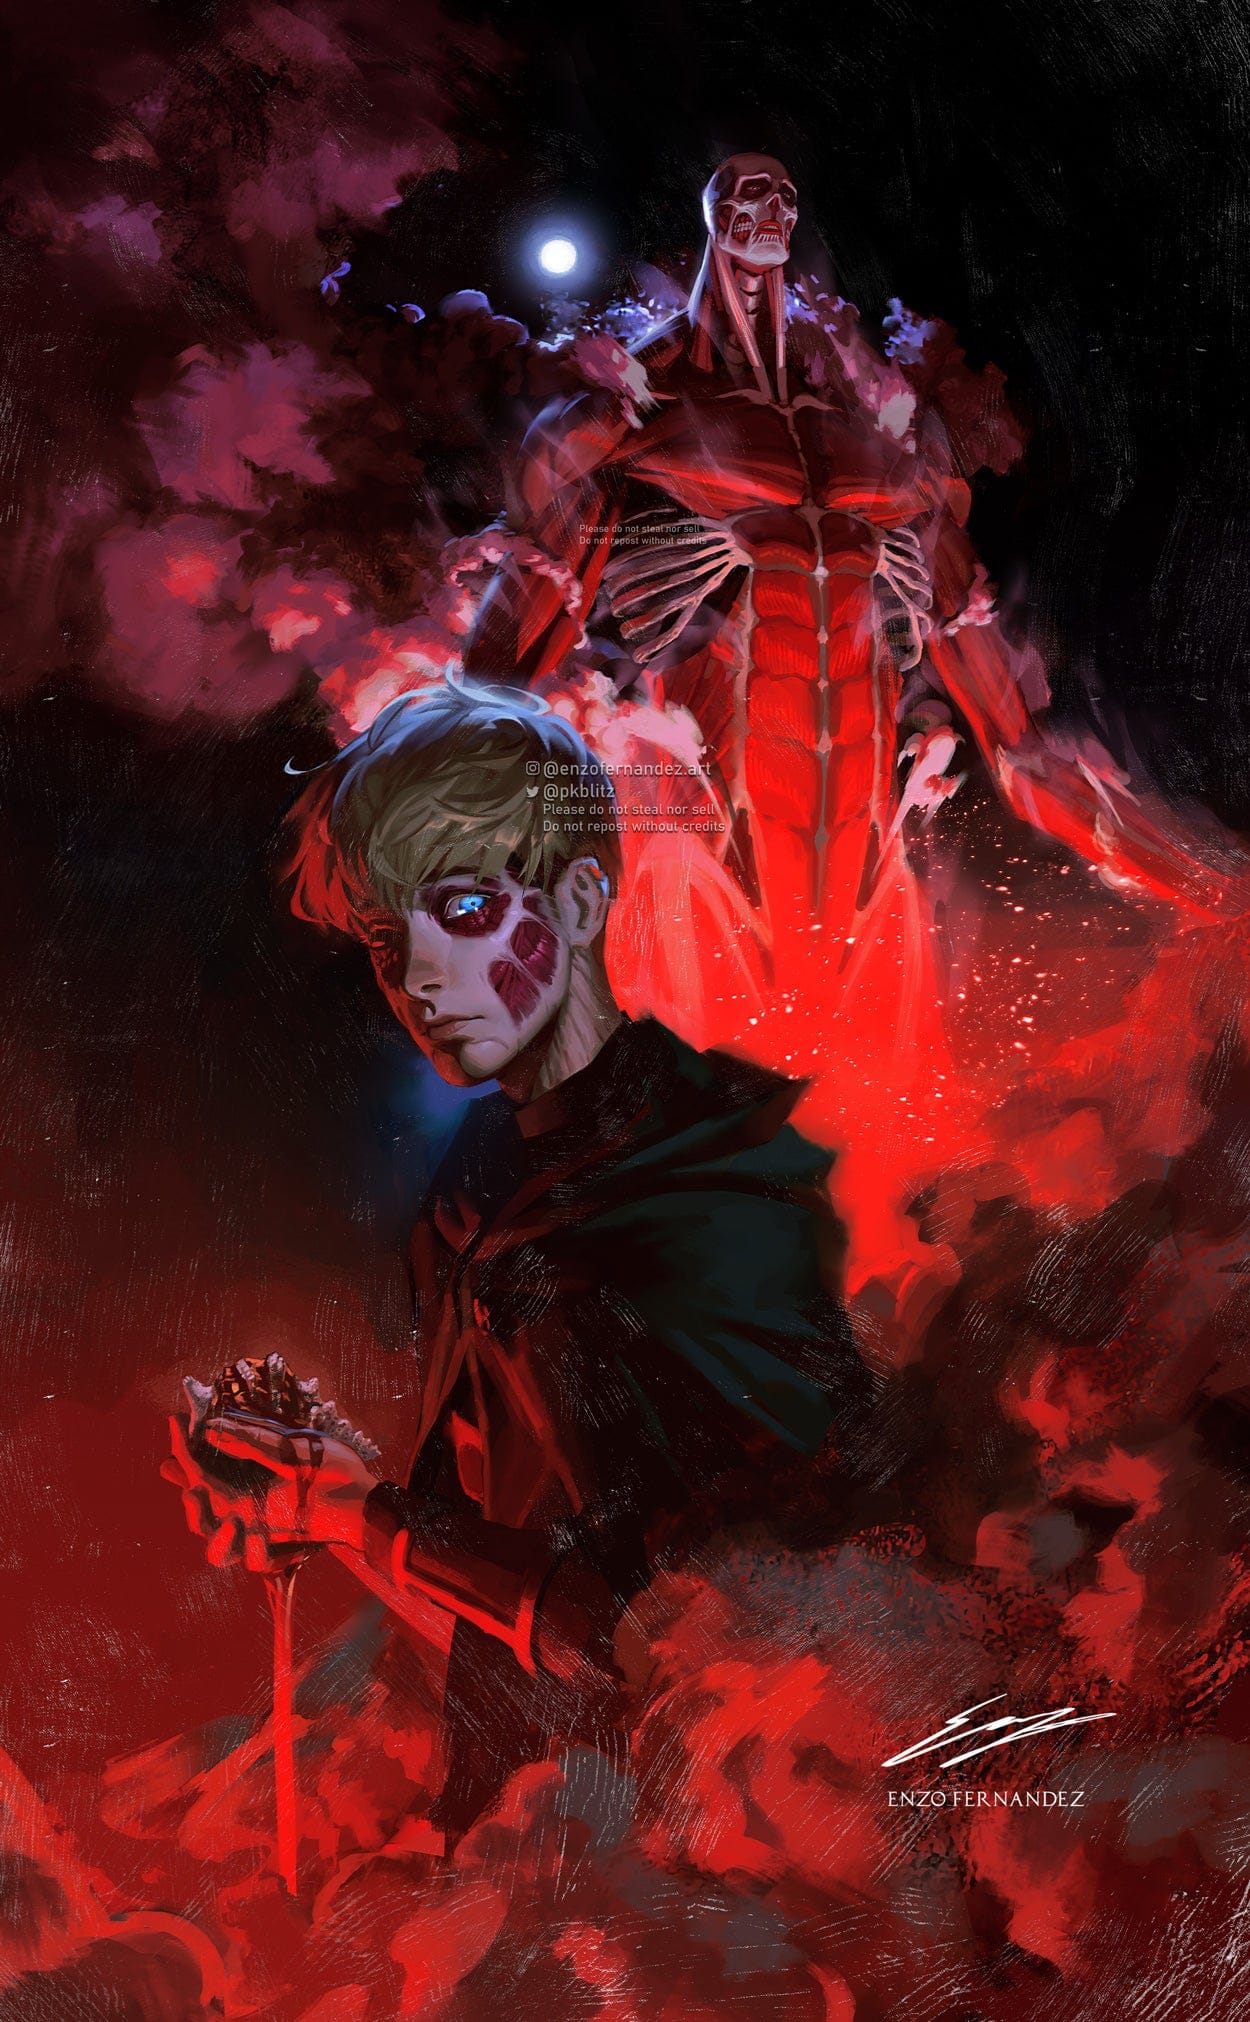 Attack on Titan - Artista fez uma épica ilustração de Armin com o seu Titã Colossal